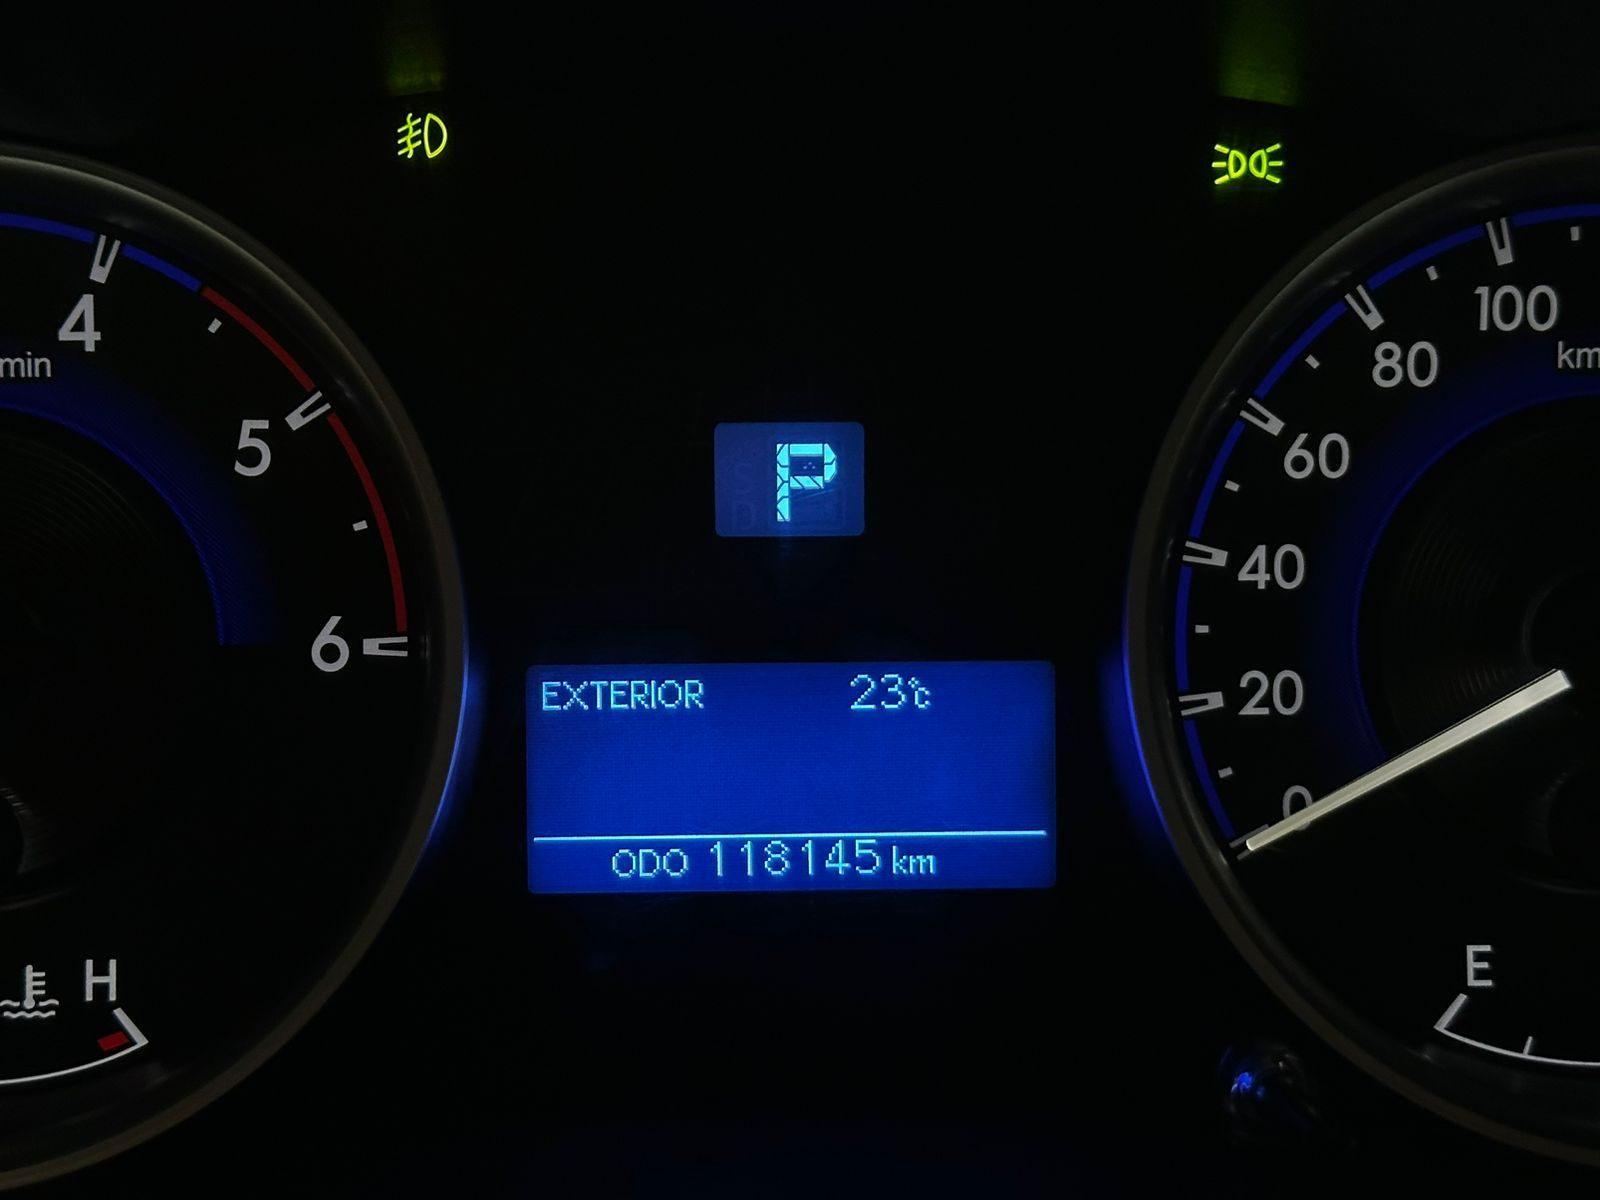 Toyota Hilux CD SR 4x4 2.8 TDI Diesel Aut. 2016